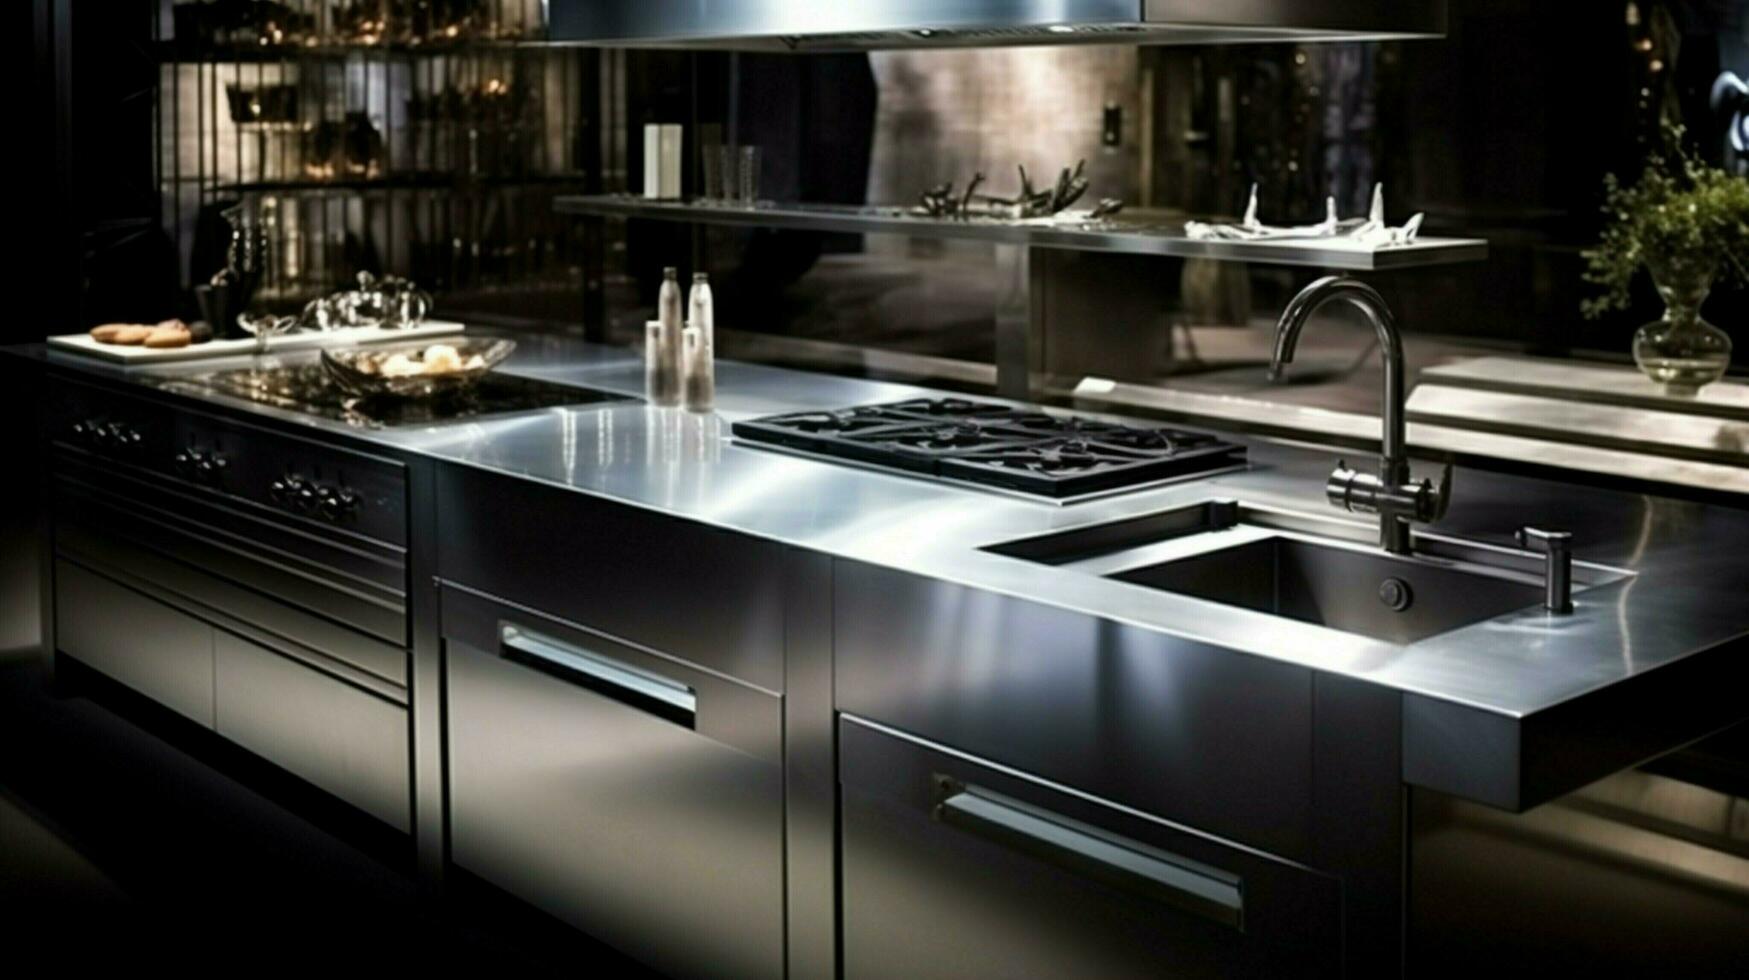 moderno cozinha equipamento dentro inoxidável aço Projeto foto